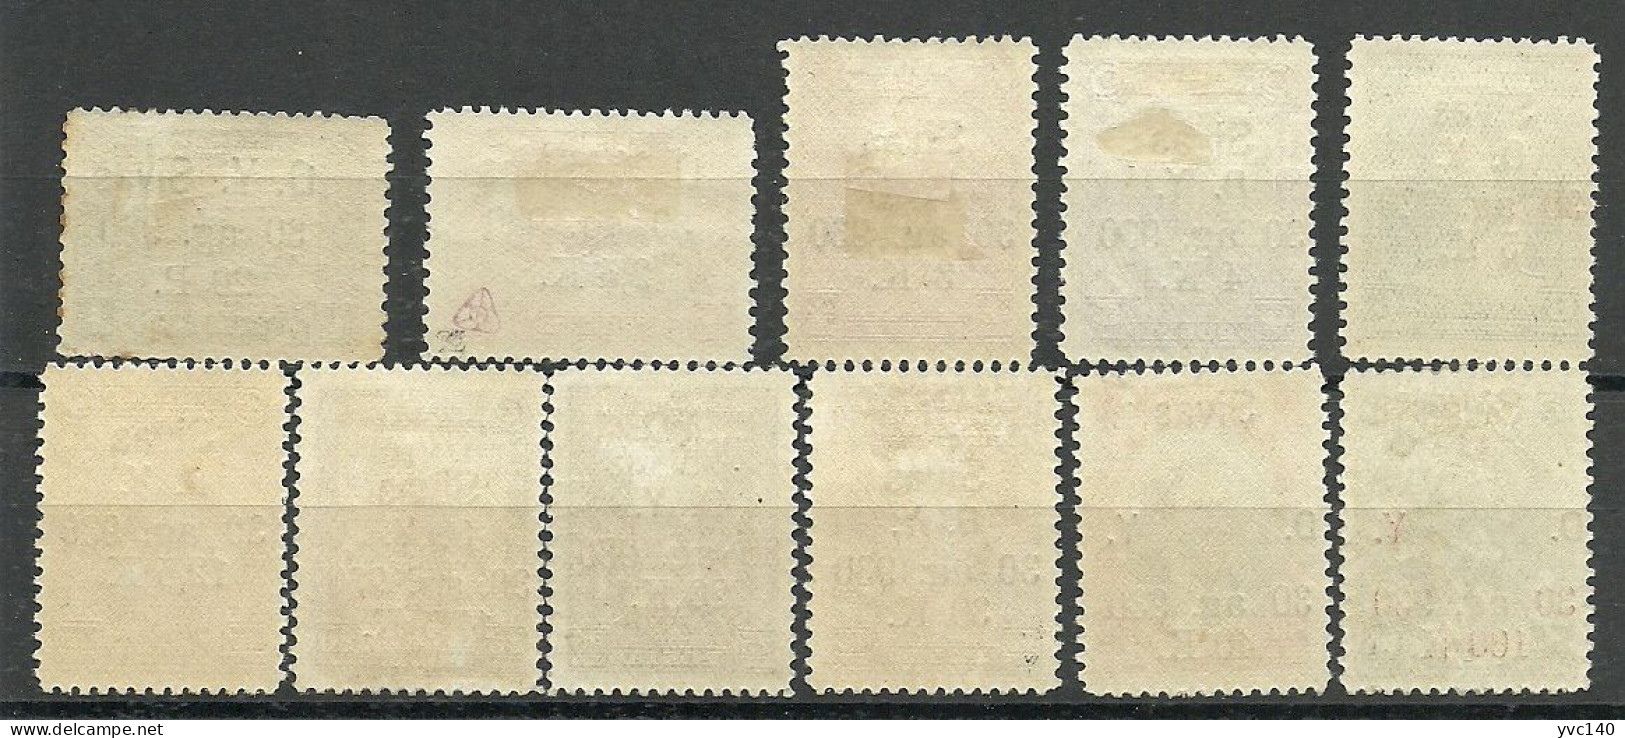 Turkey; 1930 Ankara-Sivas Railway Stamps "Broken (D)" ERROR MNH**/MH* RRR - Nuovi